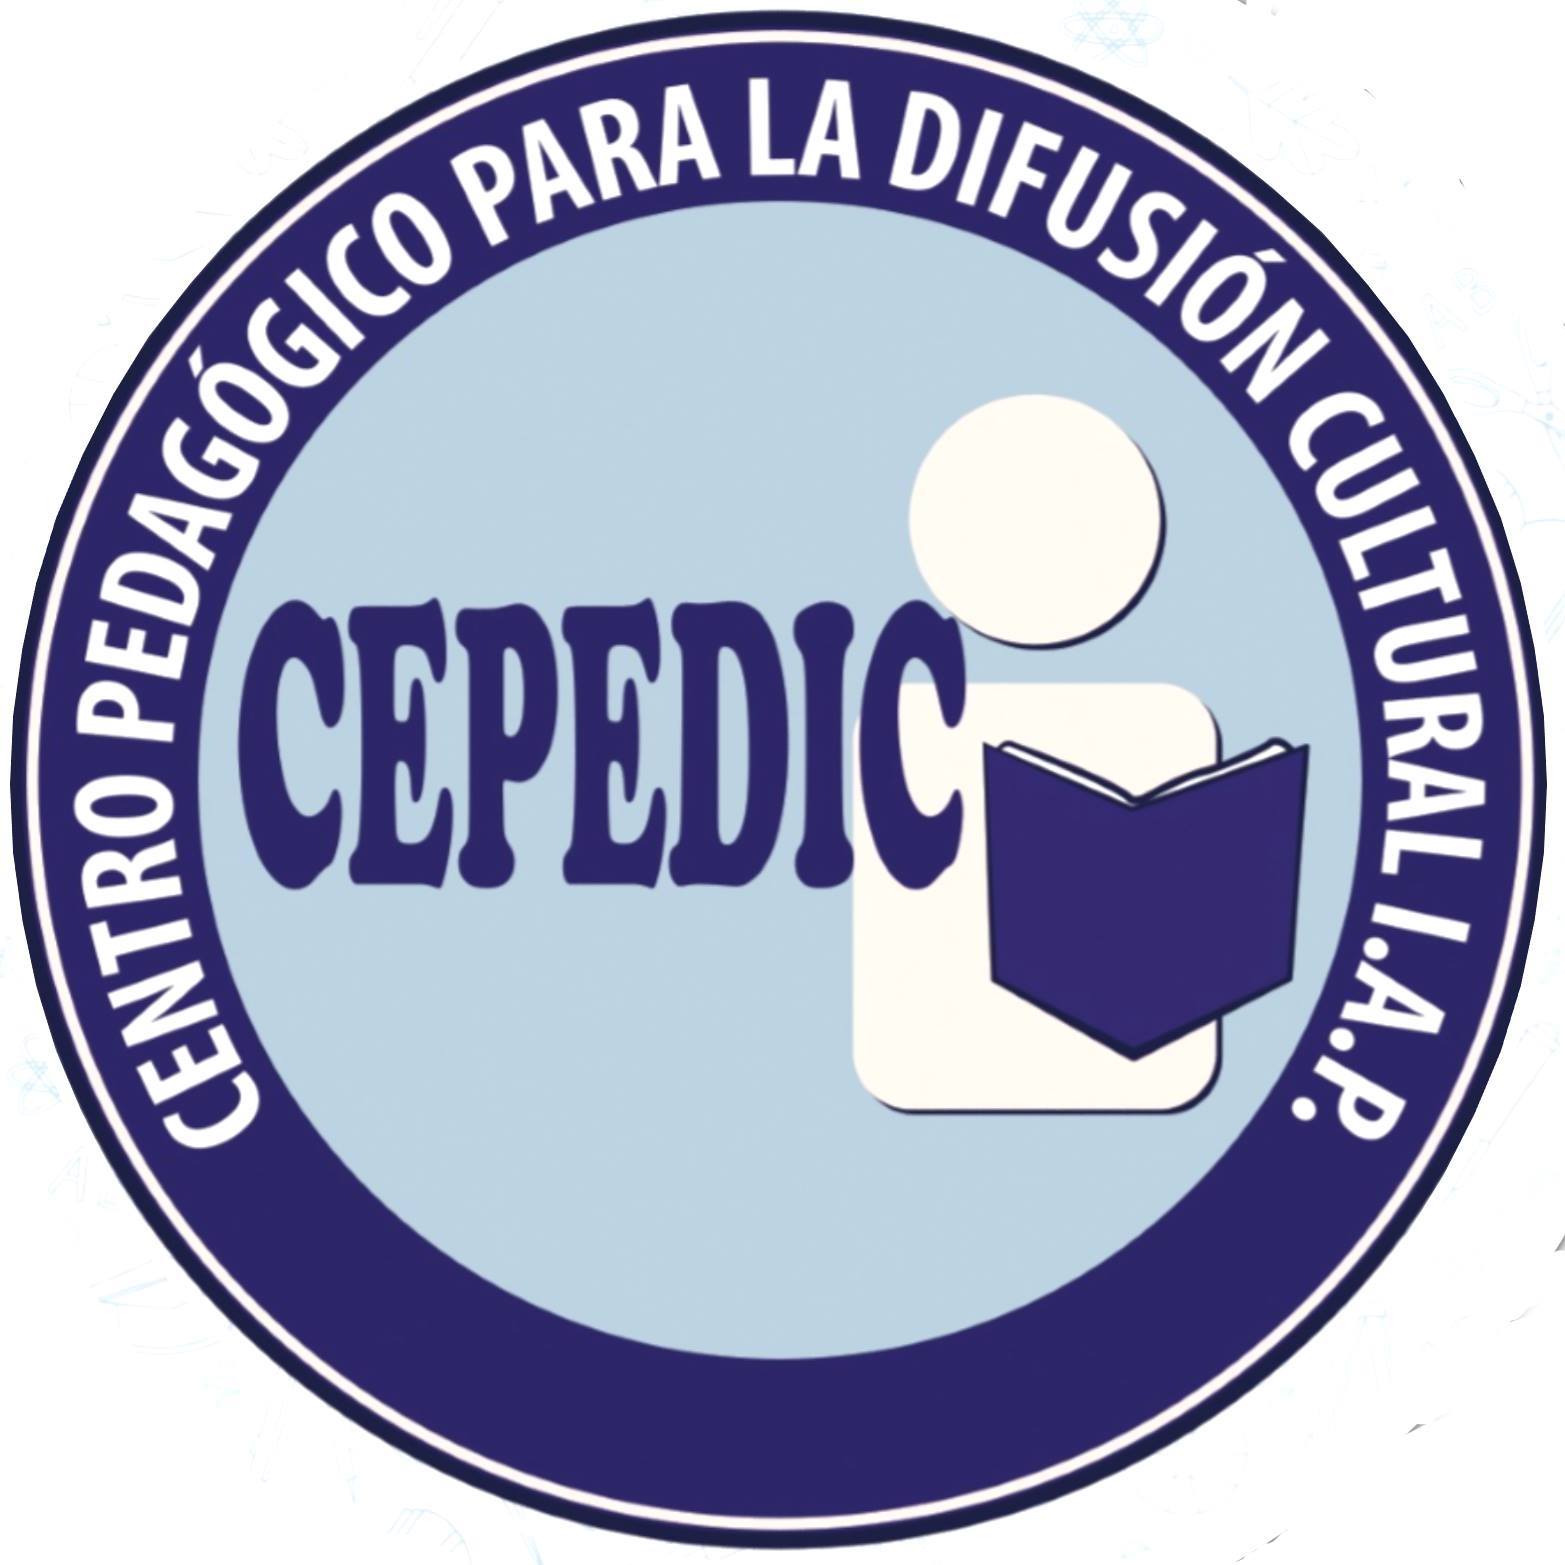 CEPEDIC IAP alternativa de apoyo para estudiantes michoacanos